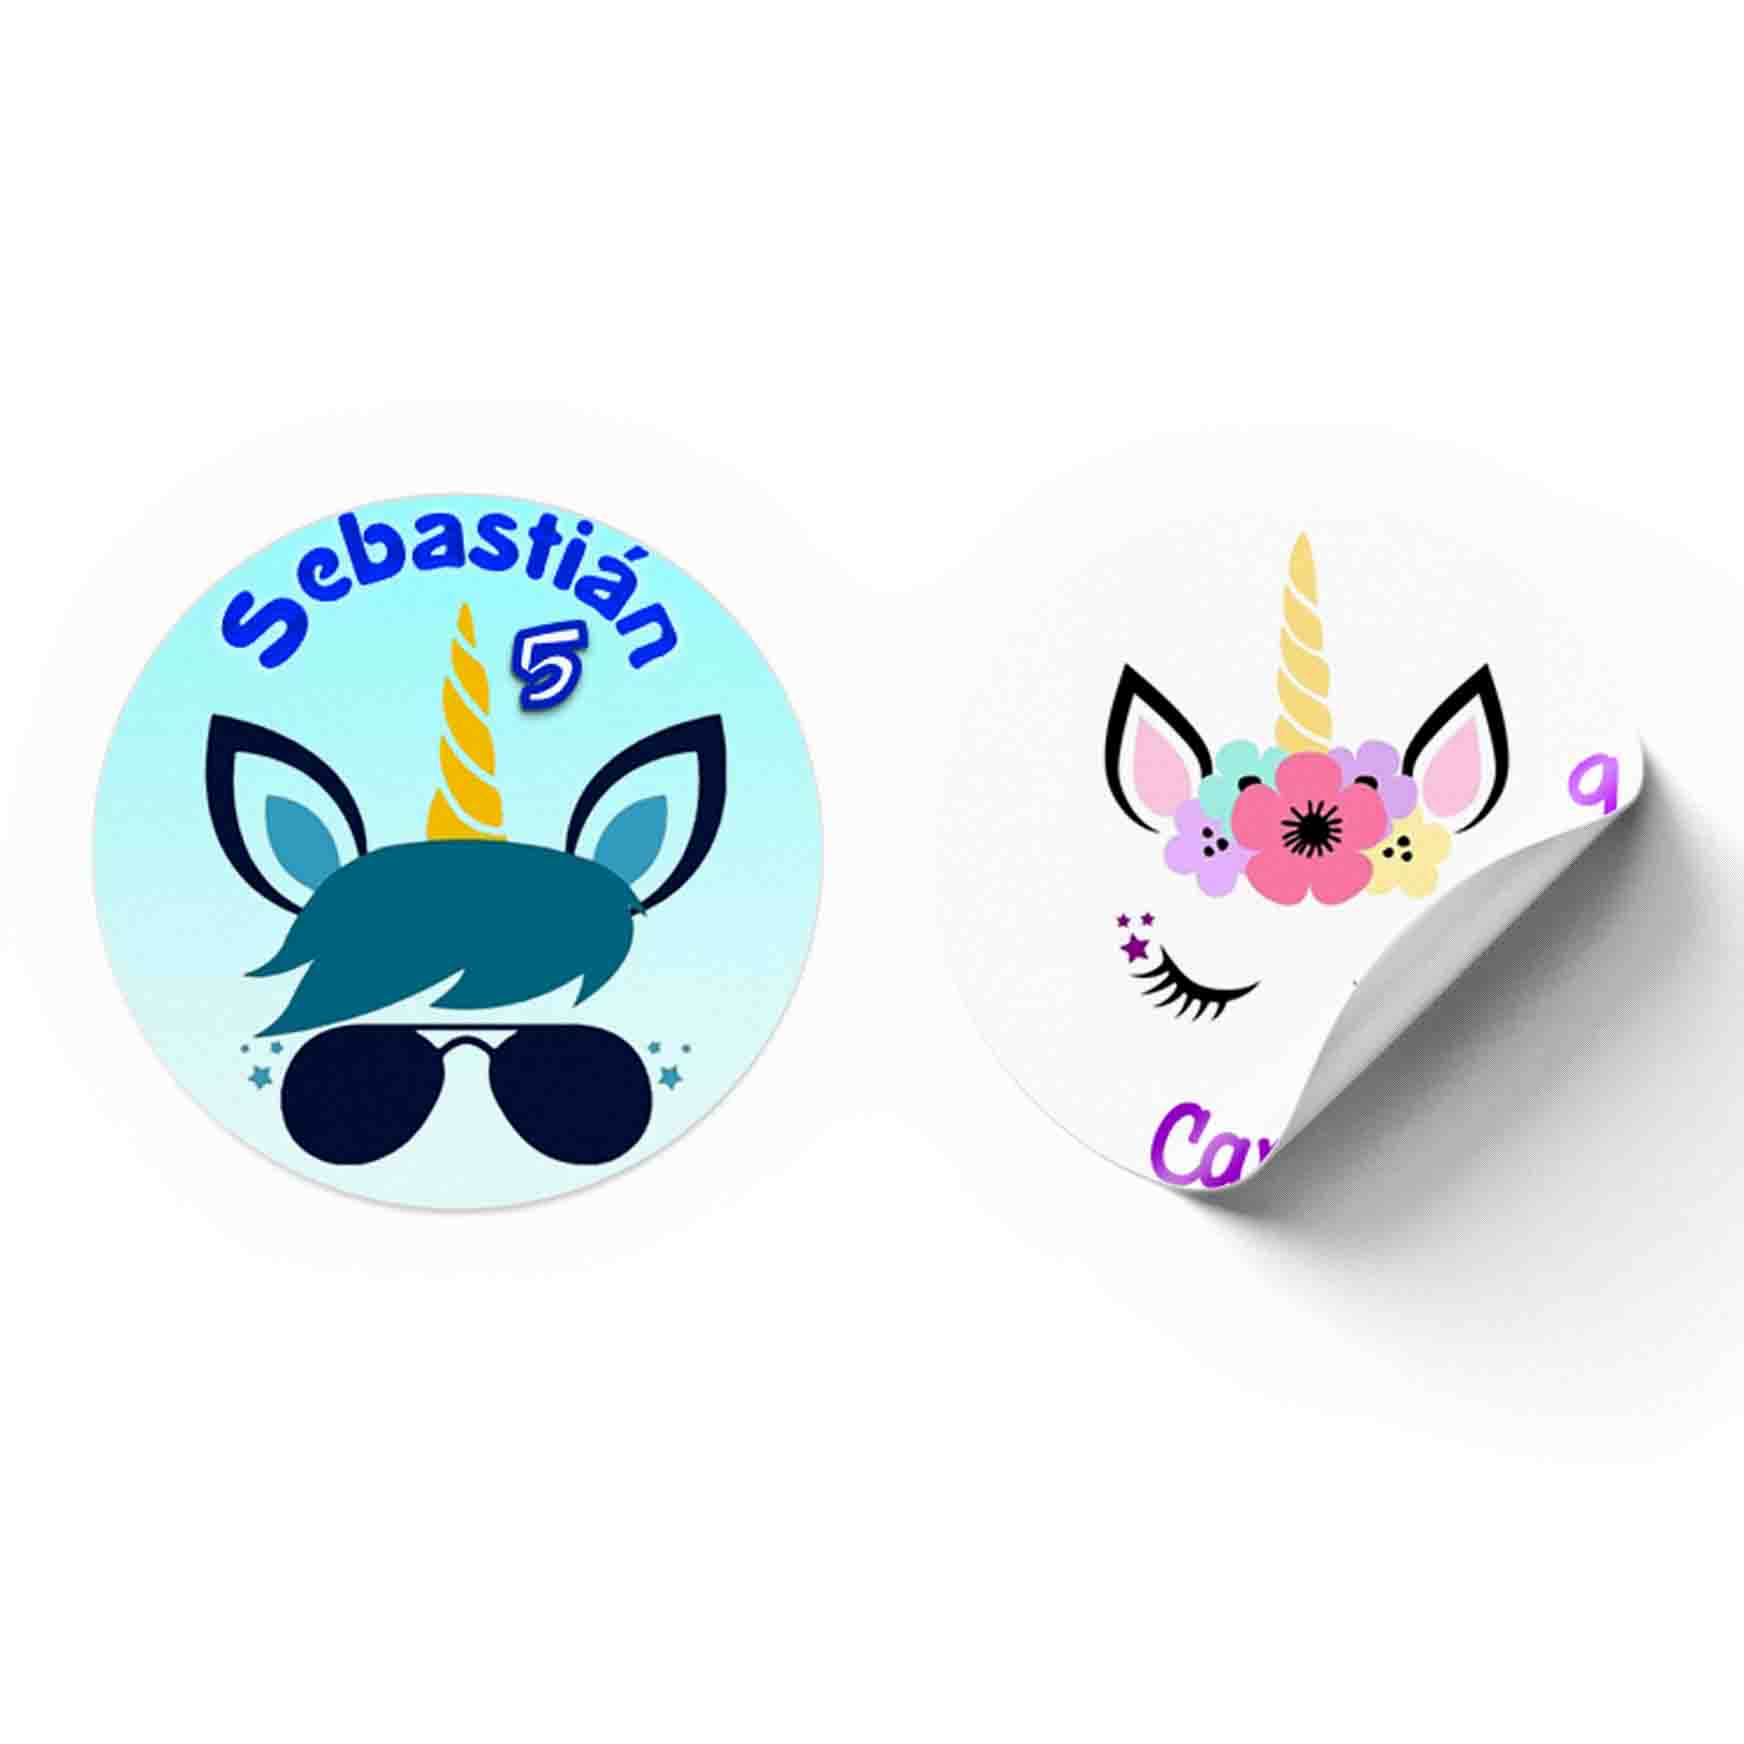 Pegatinas personalizadas de cumpleaños de unicornio Etiquetas de